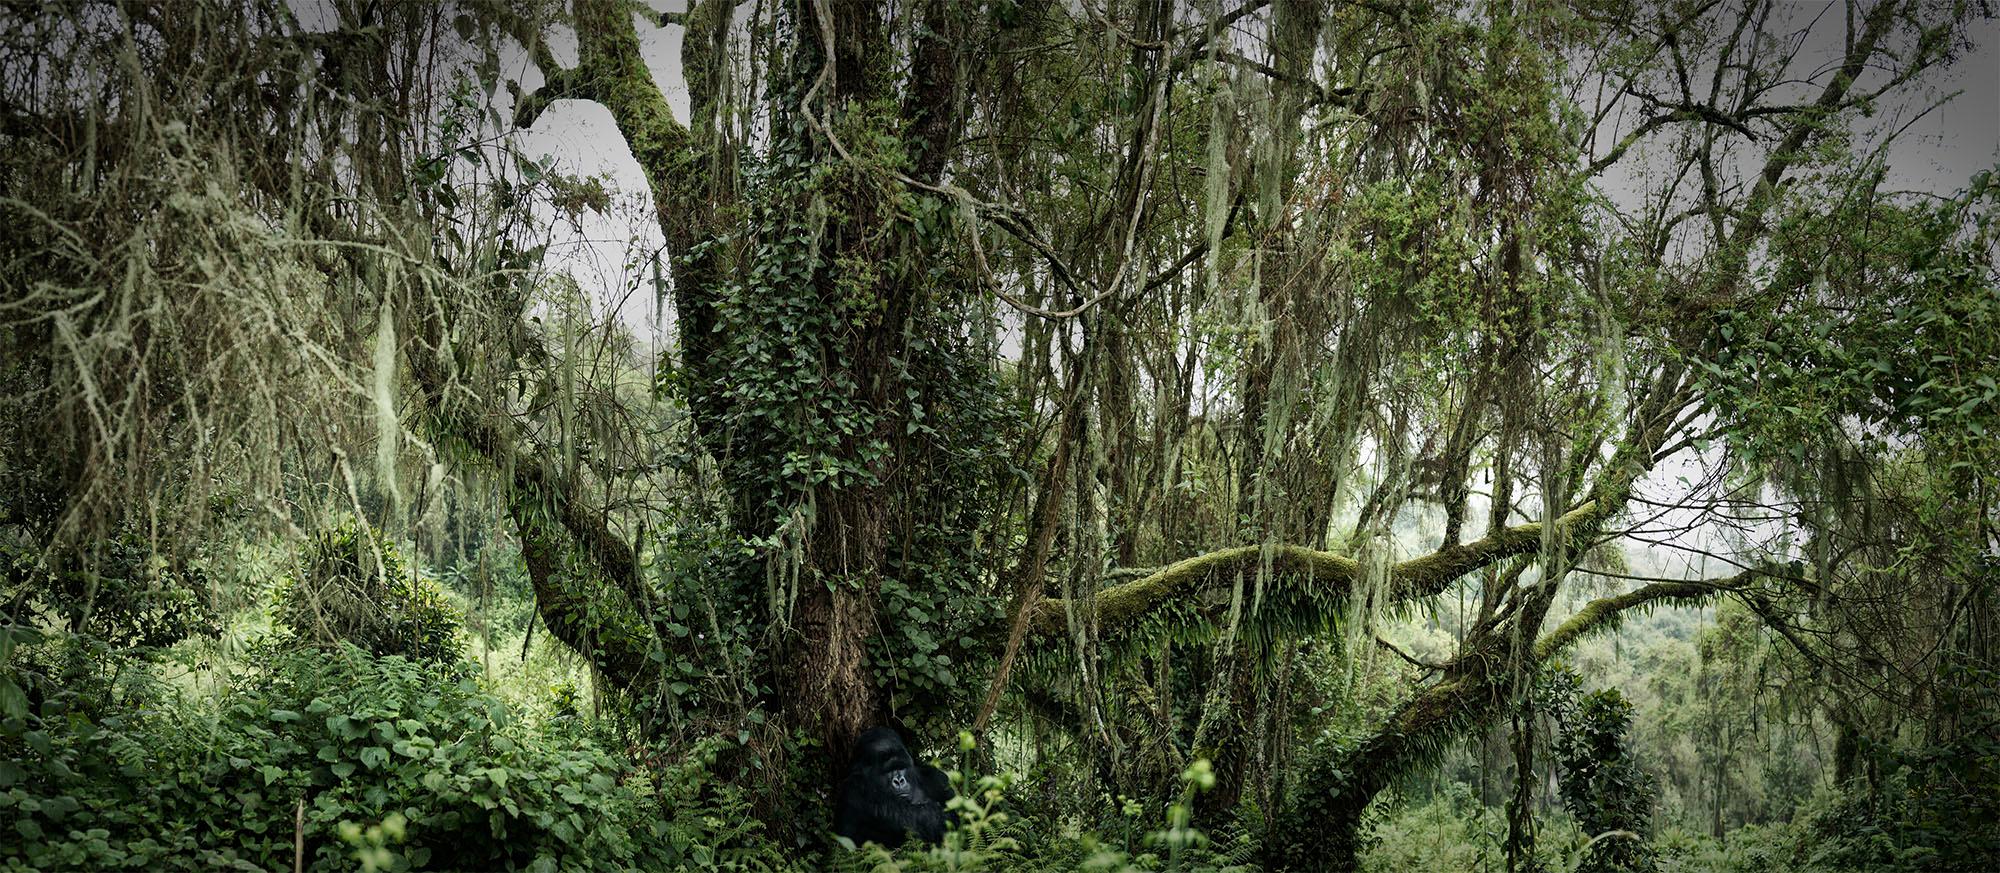 Landscape Photograph Joachim Schmeisser - Paradise perdu, animal, faune, photographie de couleur, vert, gorille, Afrique